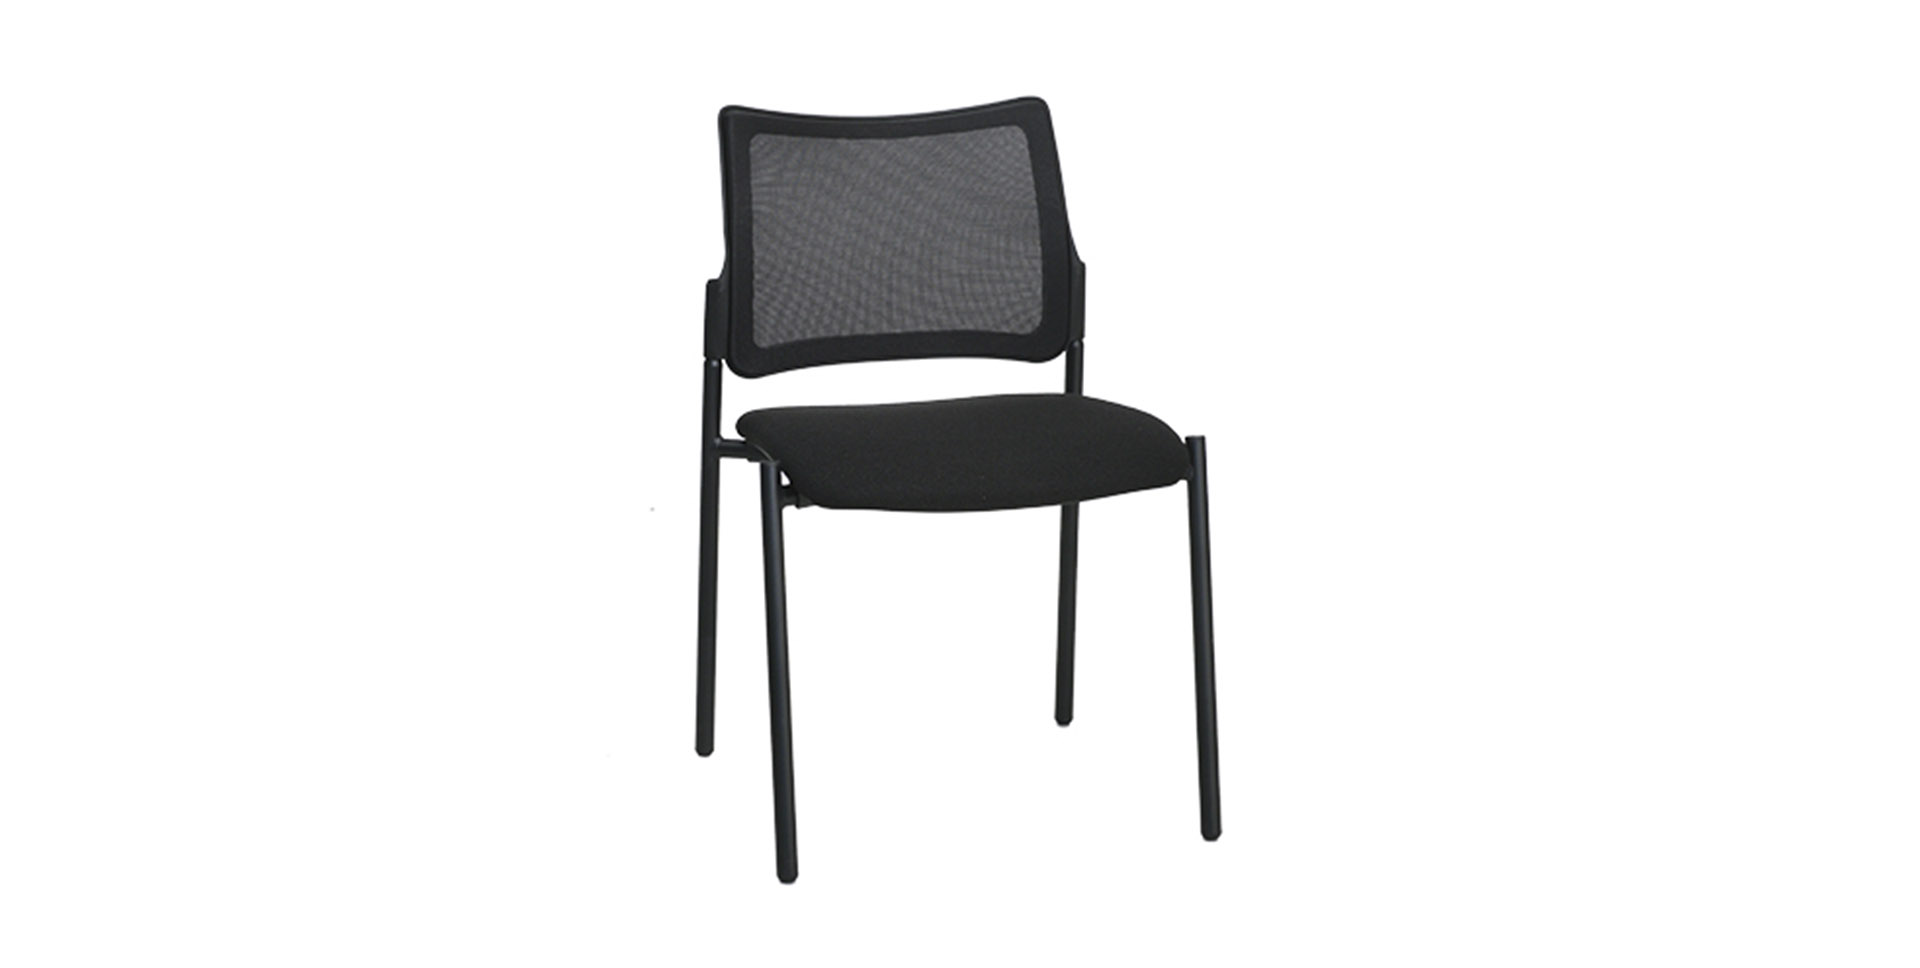 Mobiliario para oficina - silla negra